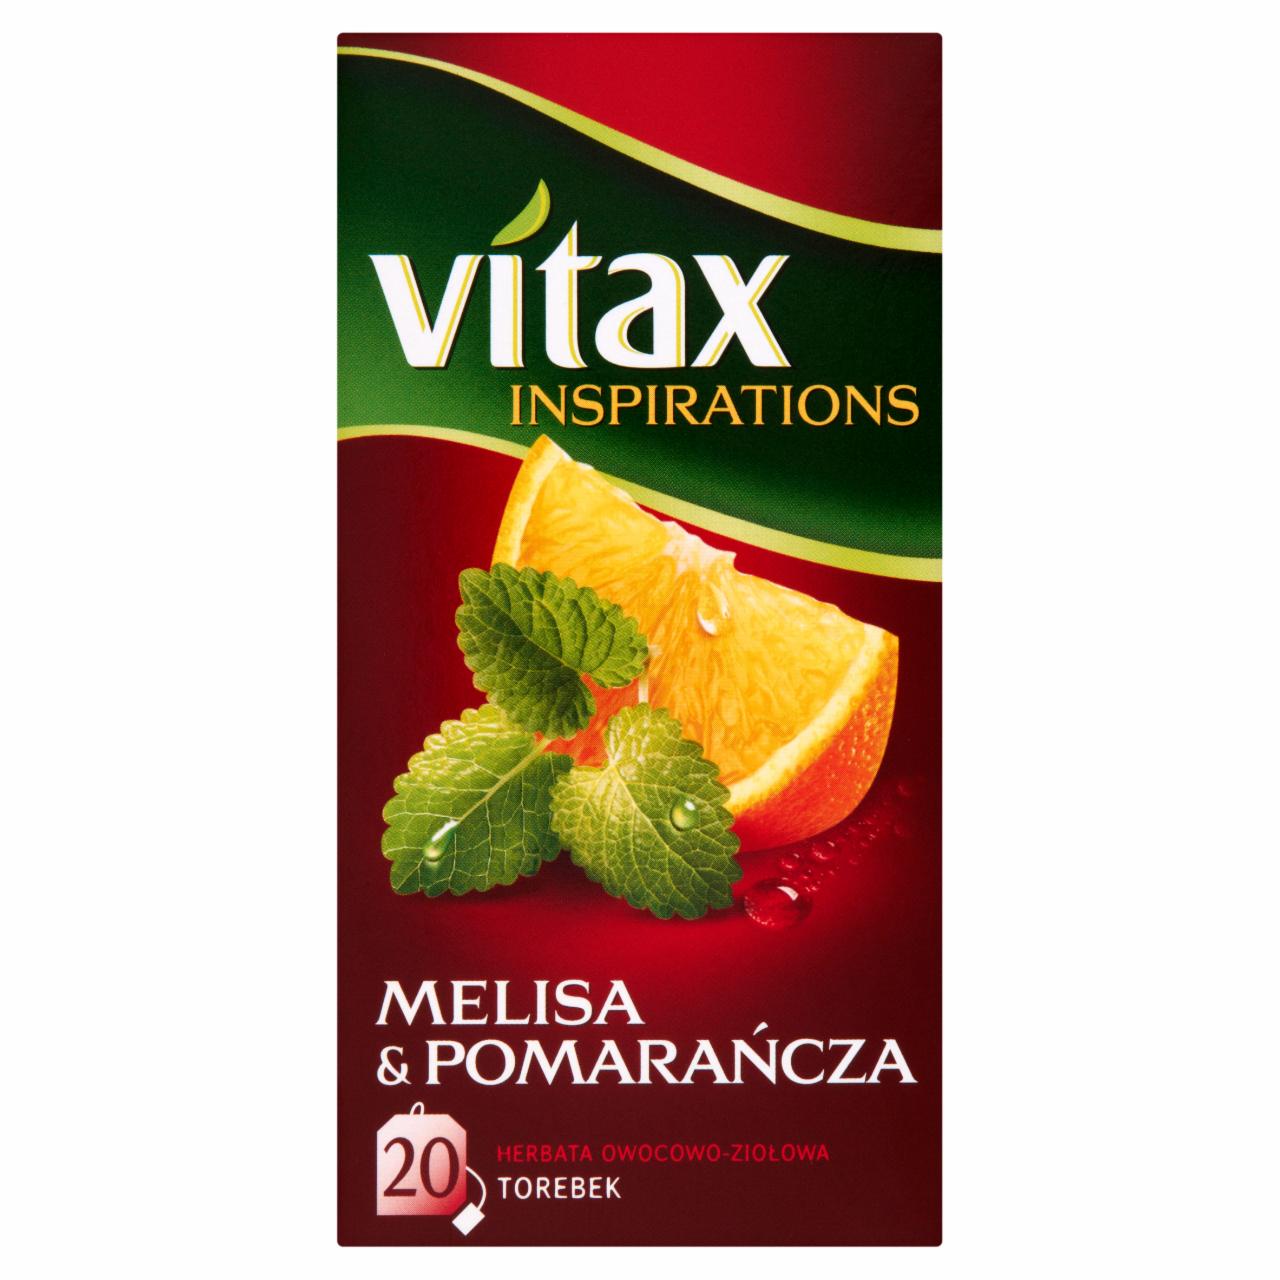 Zdjęcia - Vitax Inspiracje Herbatka owocowo-ziołowa aromatyzowana melisa & pomarańcza 33 g (20 x 1,65 g)